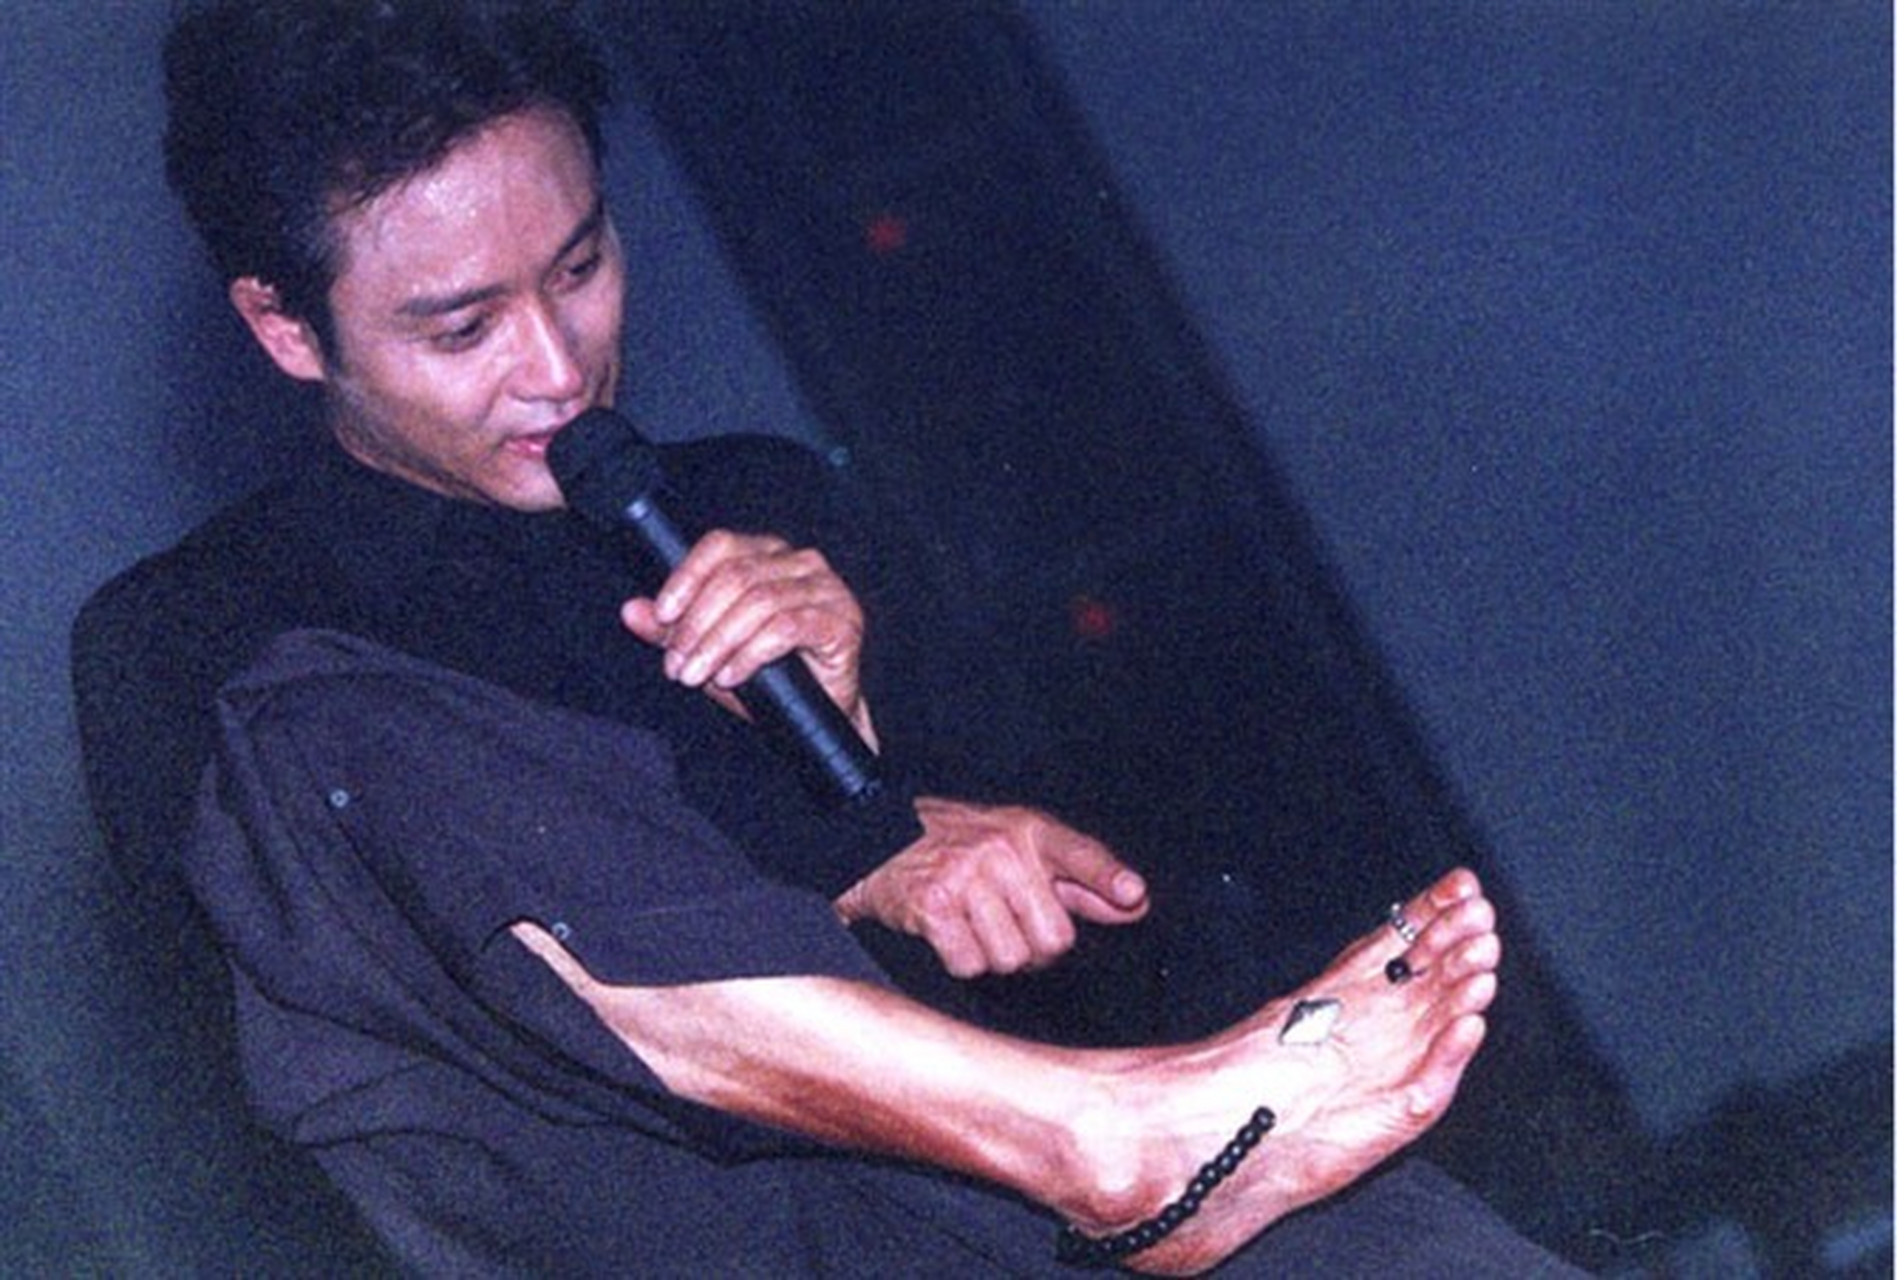 张国荣的脚上居然带着脚链和戒指,照片首次曝光令人震惊,为他进行脚部